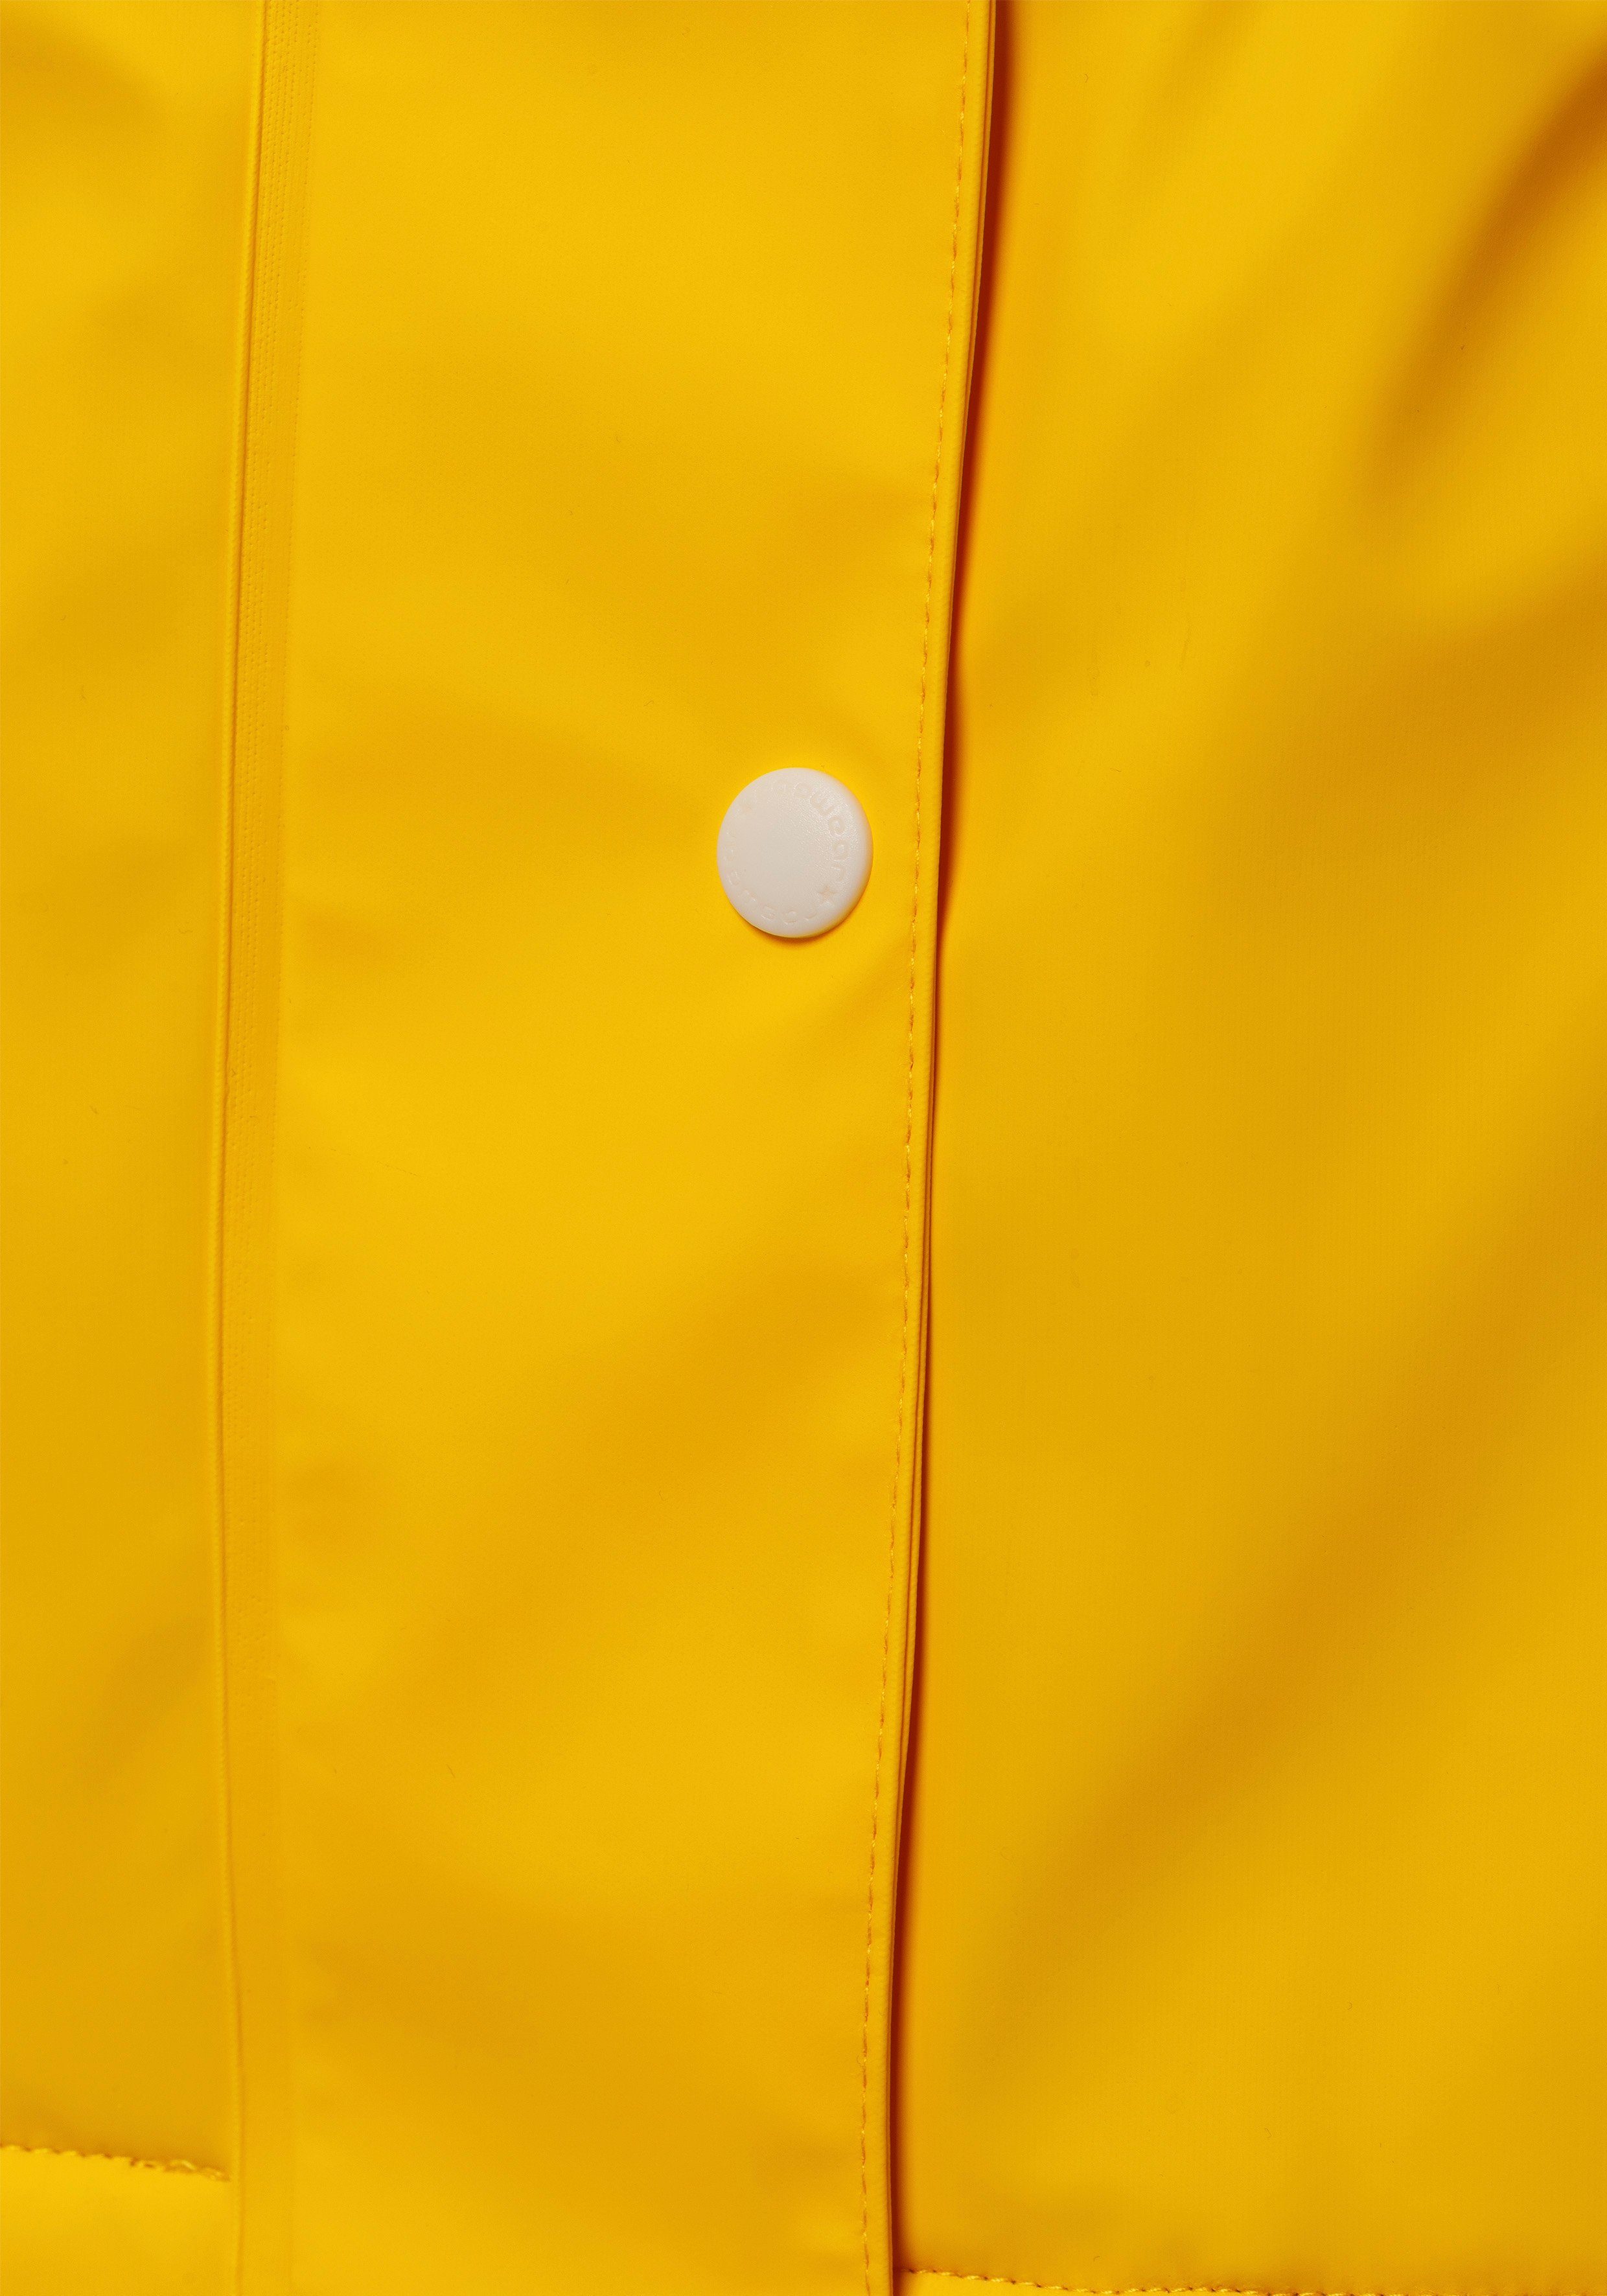 Waterproof, 6028 wasserabweisendem Ragwear Regenjacke aus yellow abgedichteten mit Material MARGE Nähten